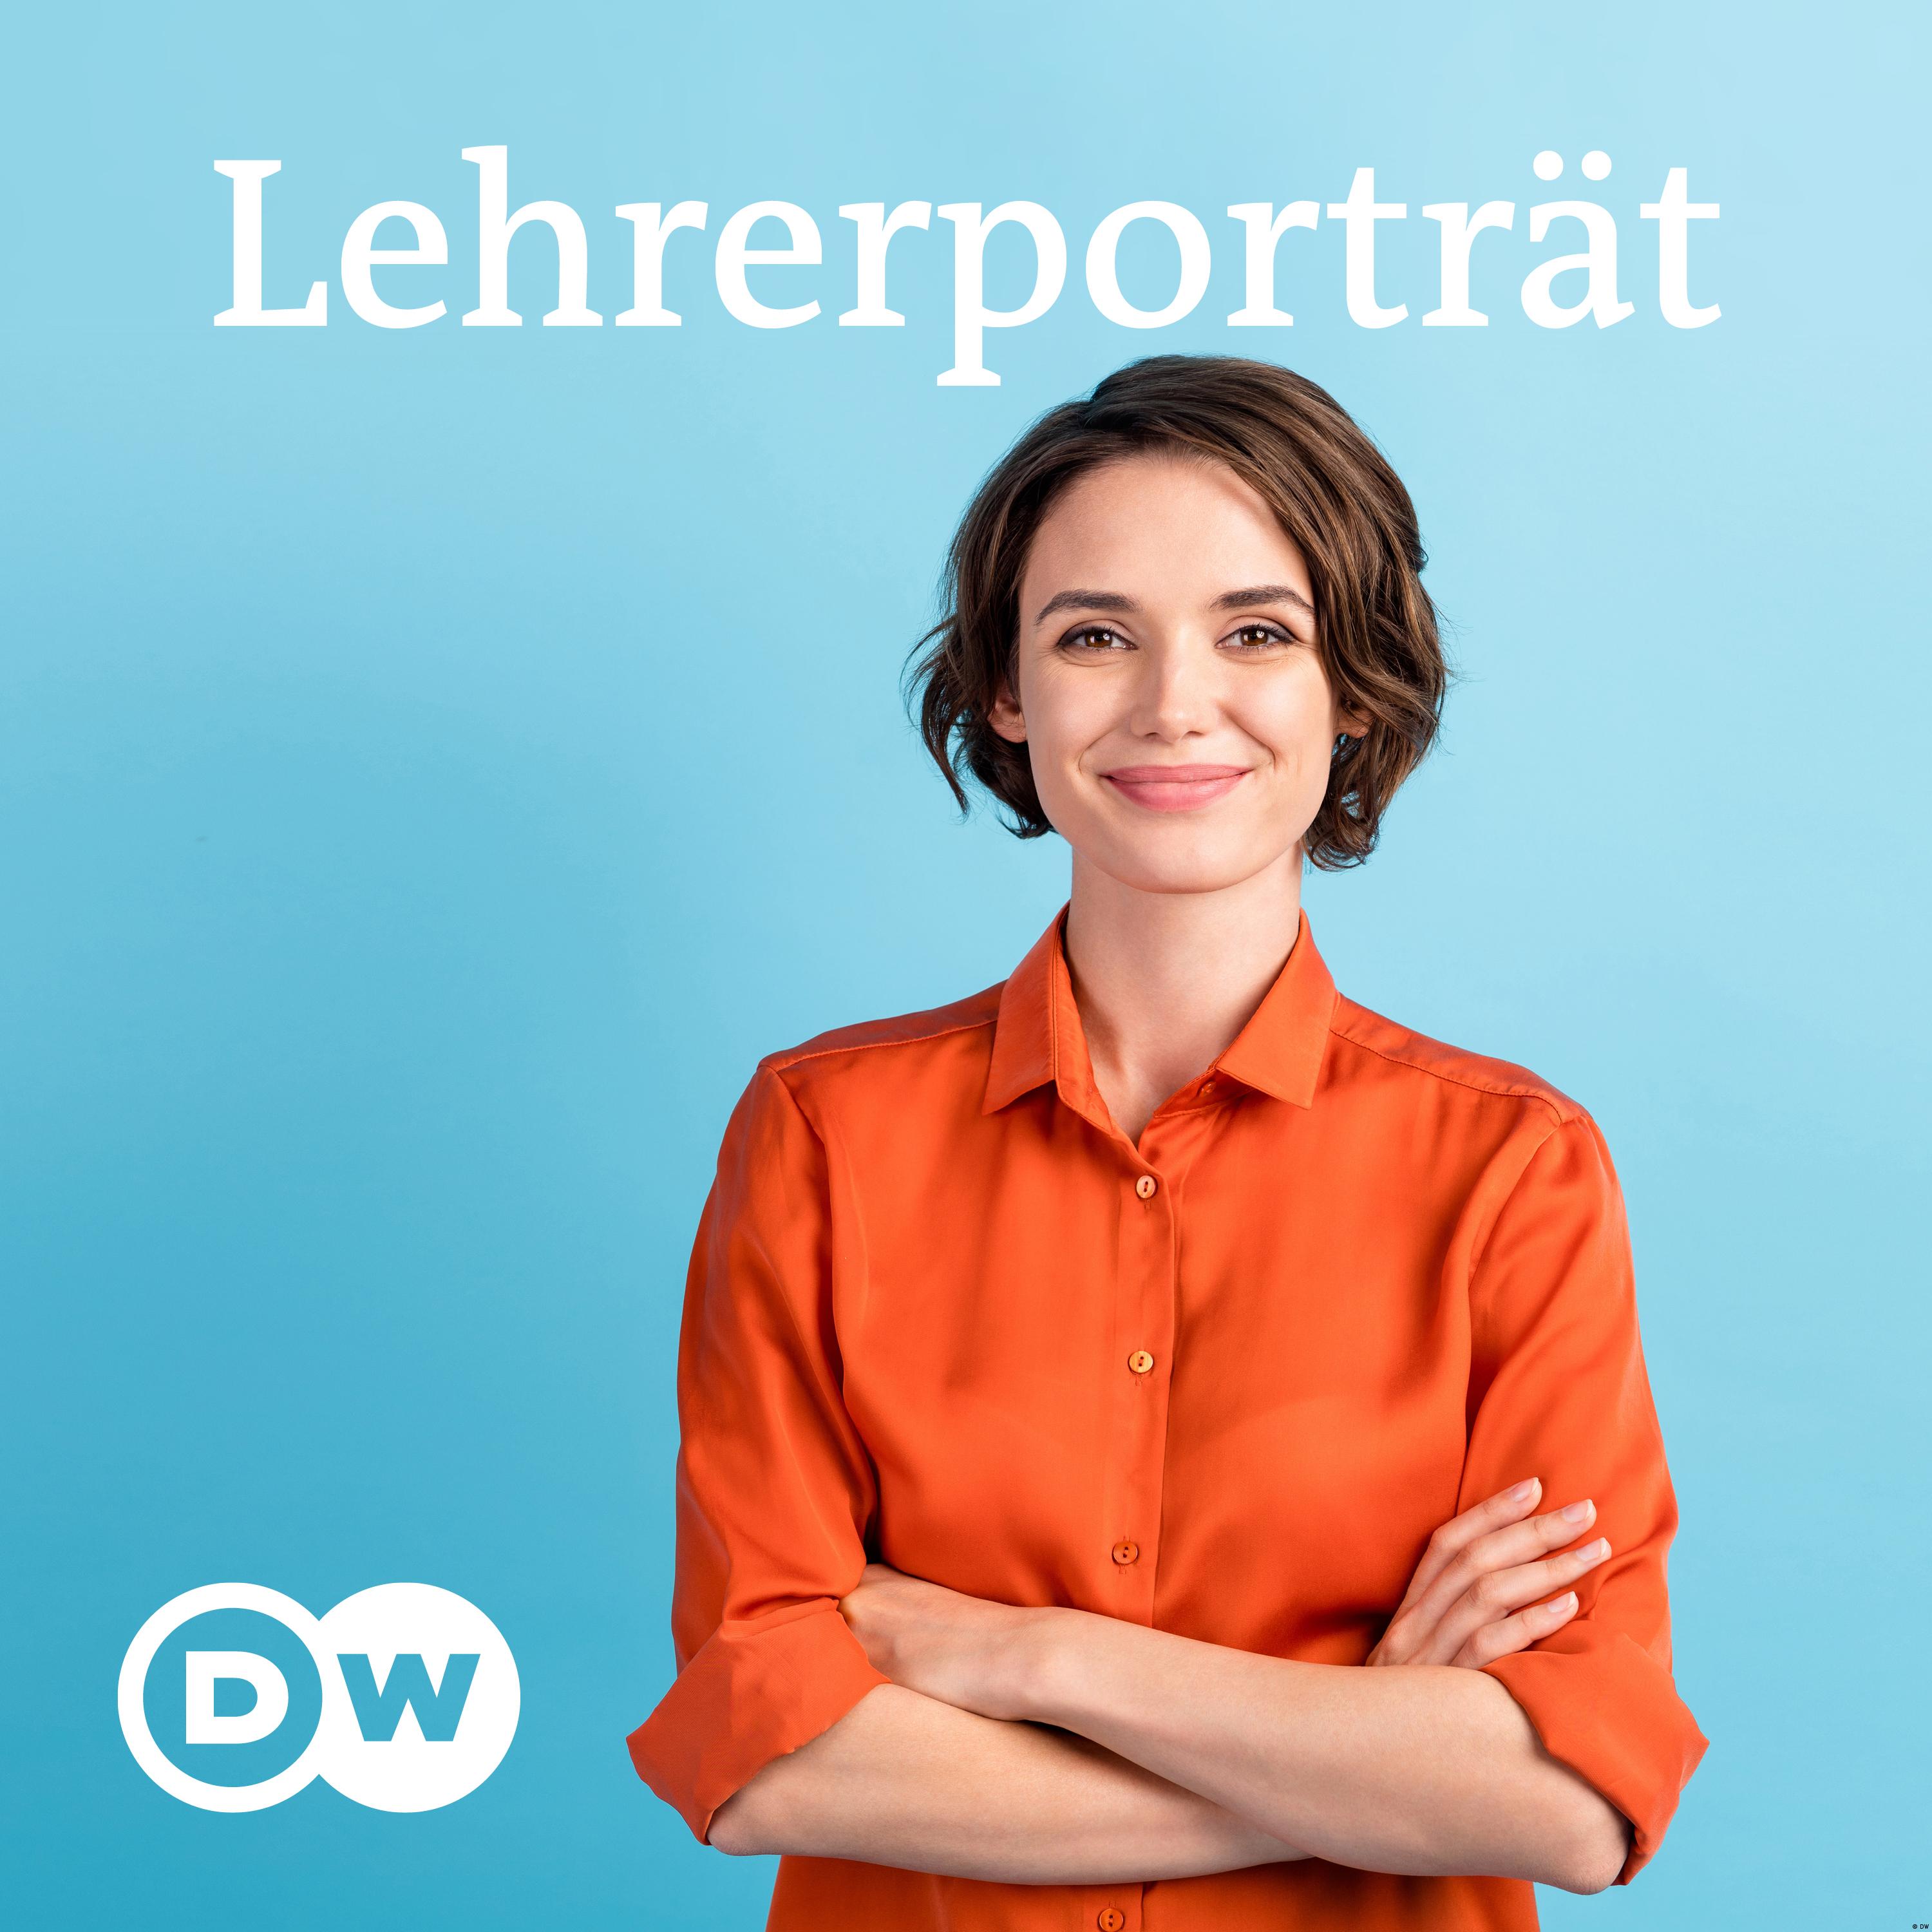 CommunityD – Lehrerporträt | Deutsch lernen | Deutsche Welle